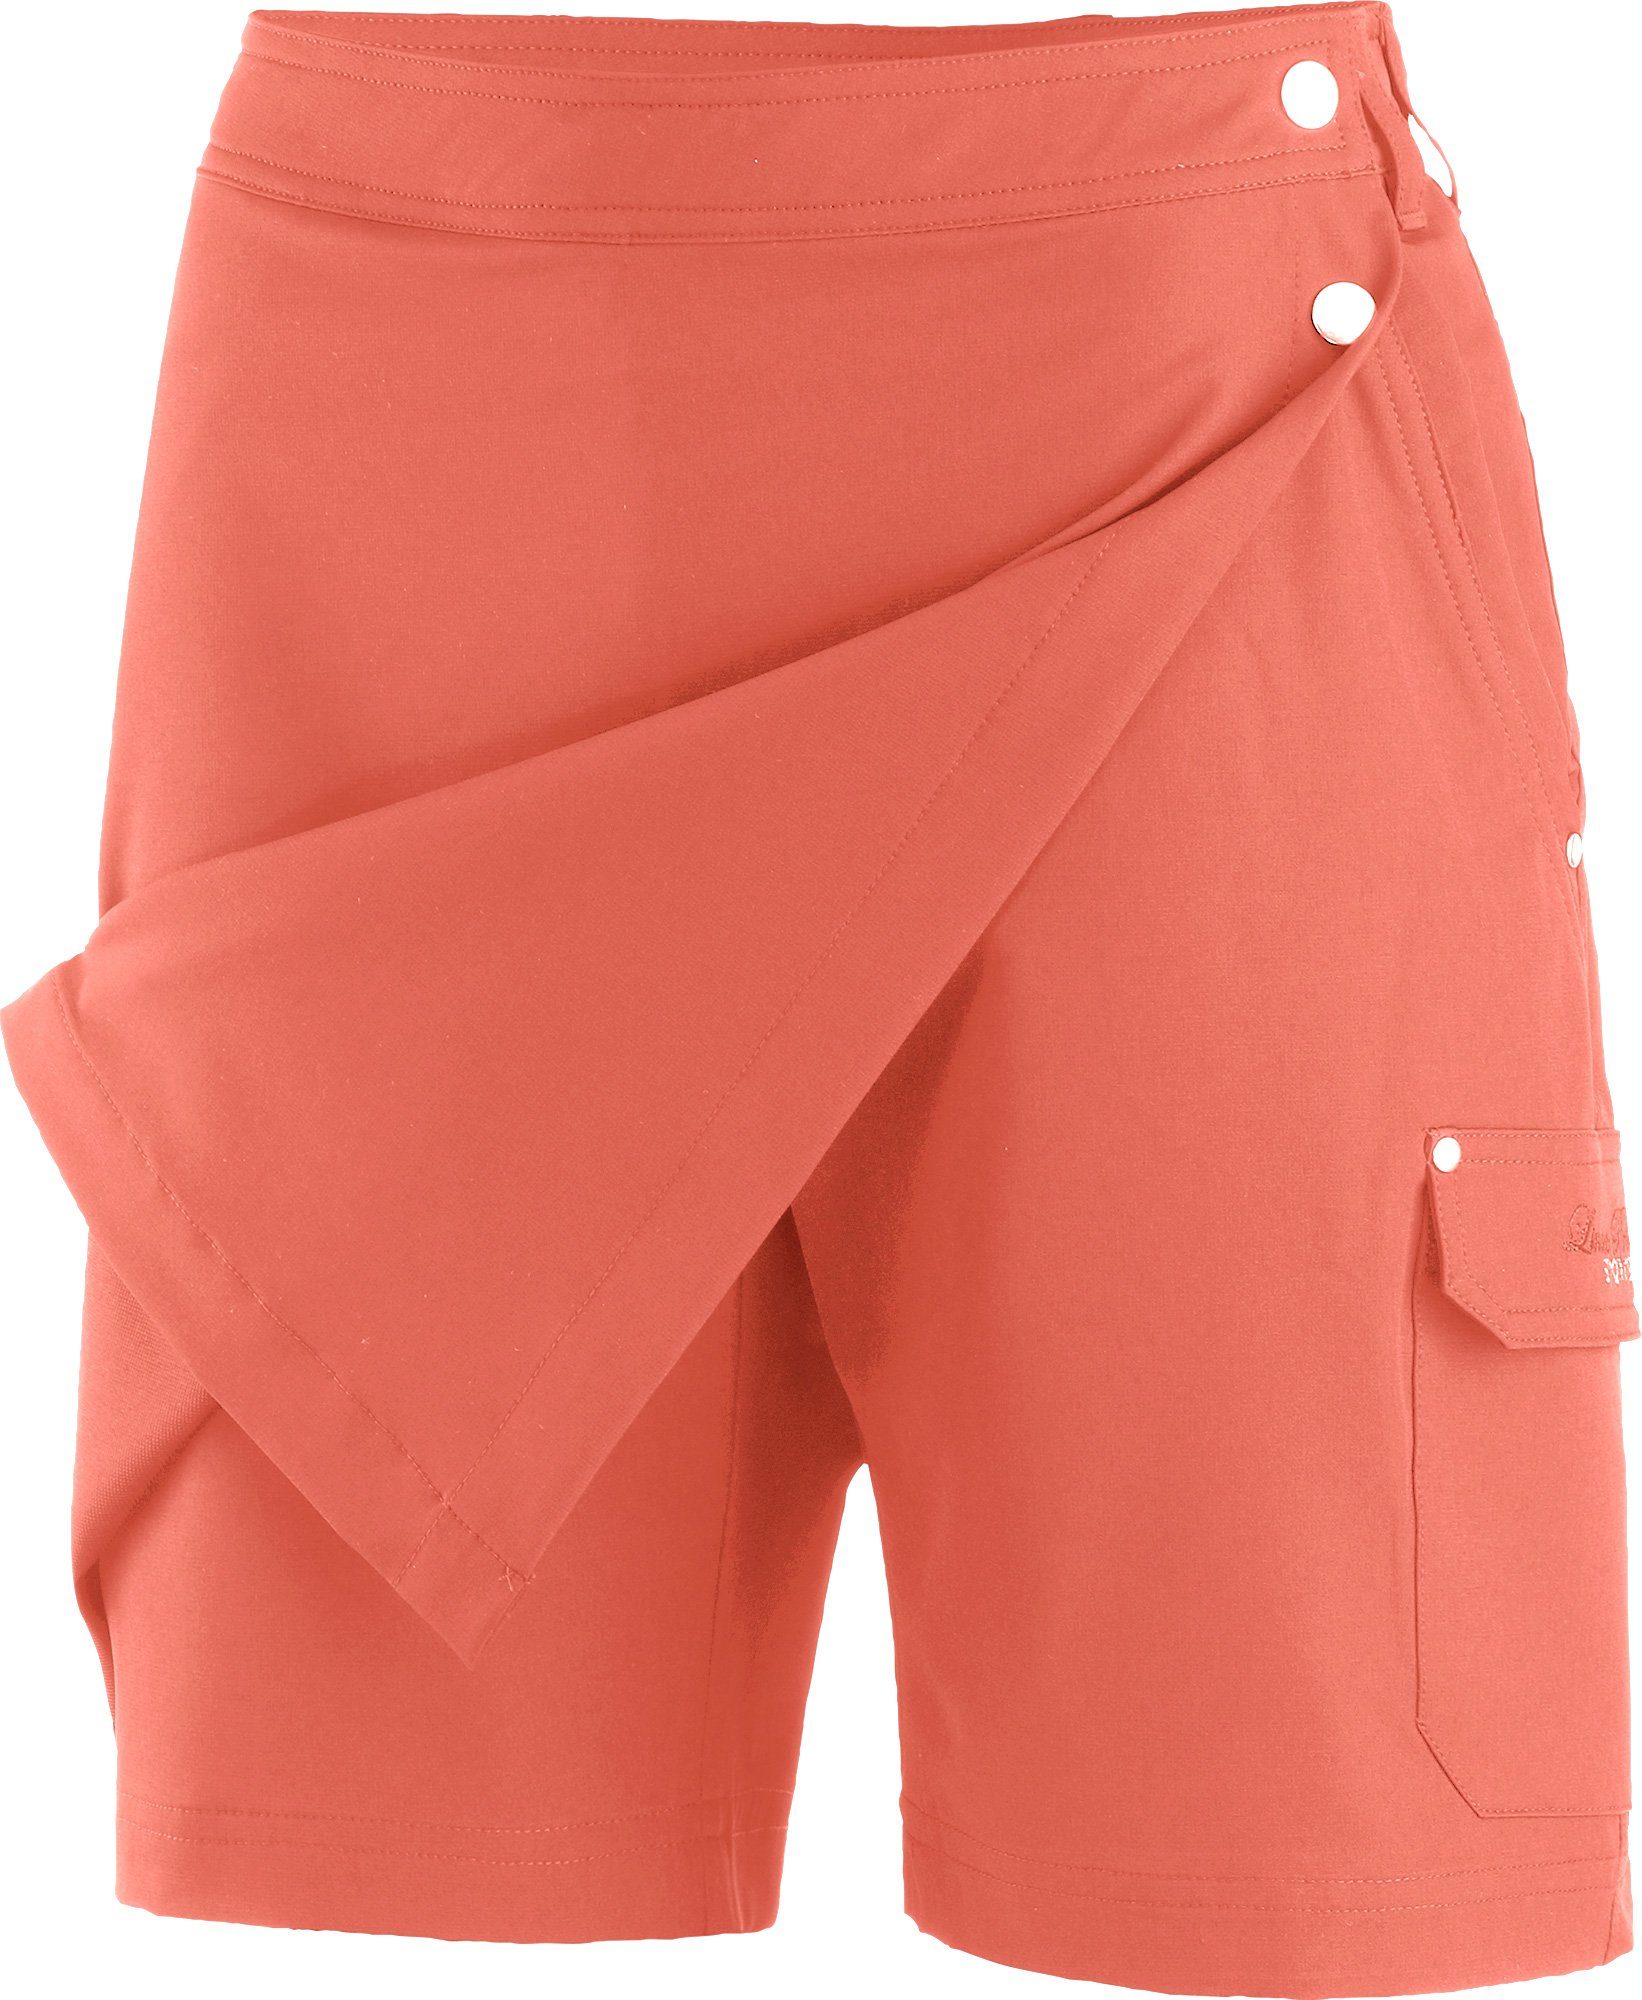 GRANBY LPO Schnelltrocknend & SKORT und LPO II Short Rock orange 2-in-1-Shorts atmungsaktiv